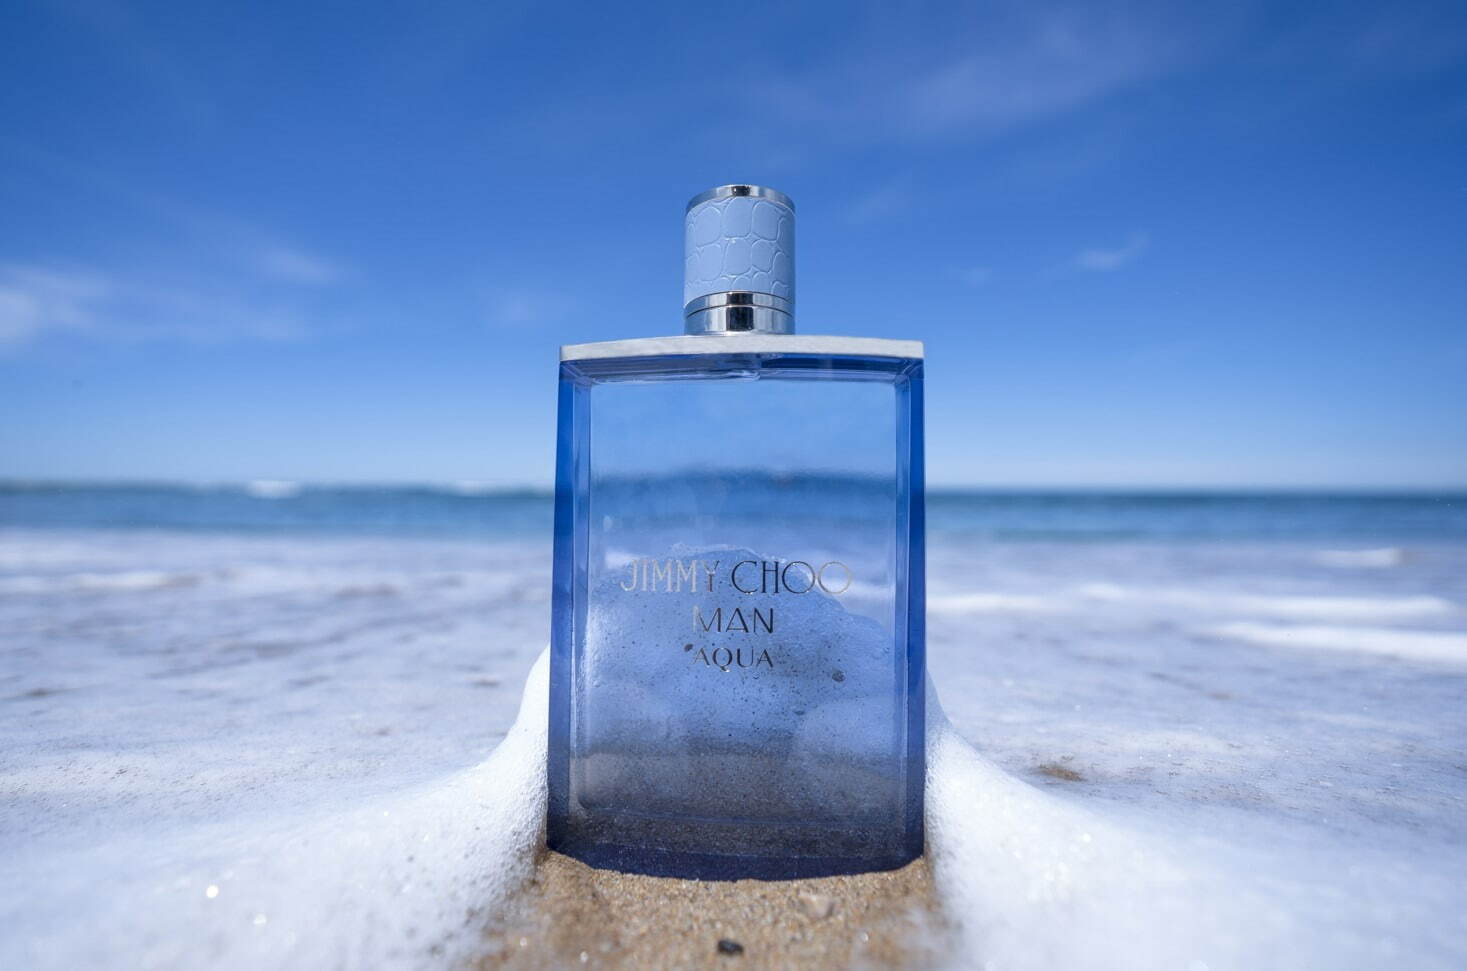 ジミー チュウ“海の香り”をイメージした新メンズフレグランス「ジミー チュウ マン アクア」 - ファッションプレス